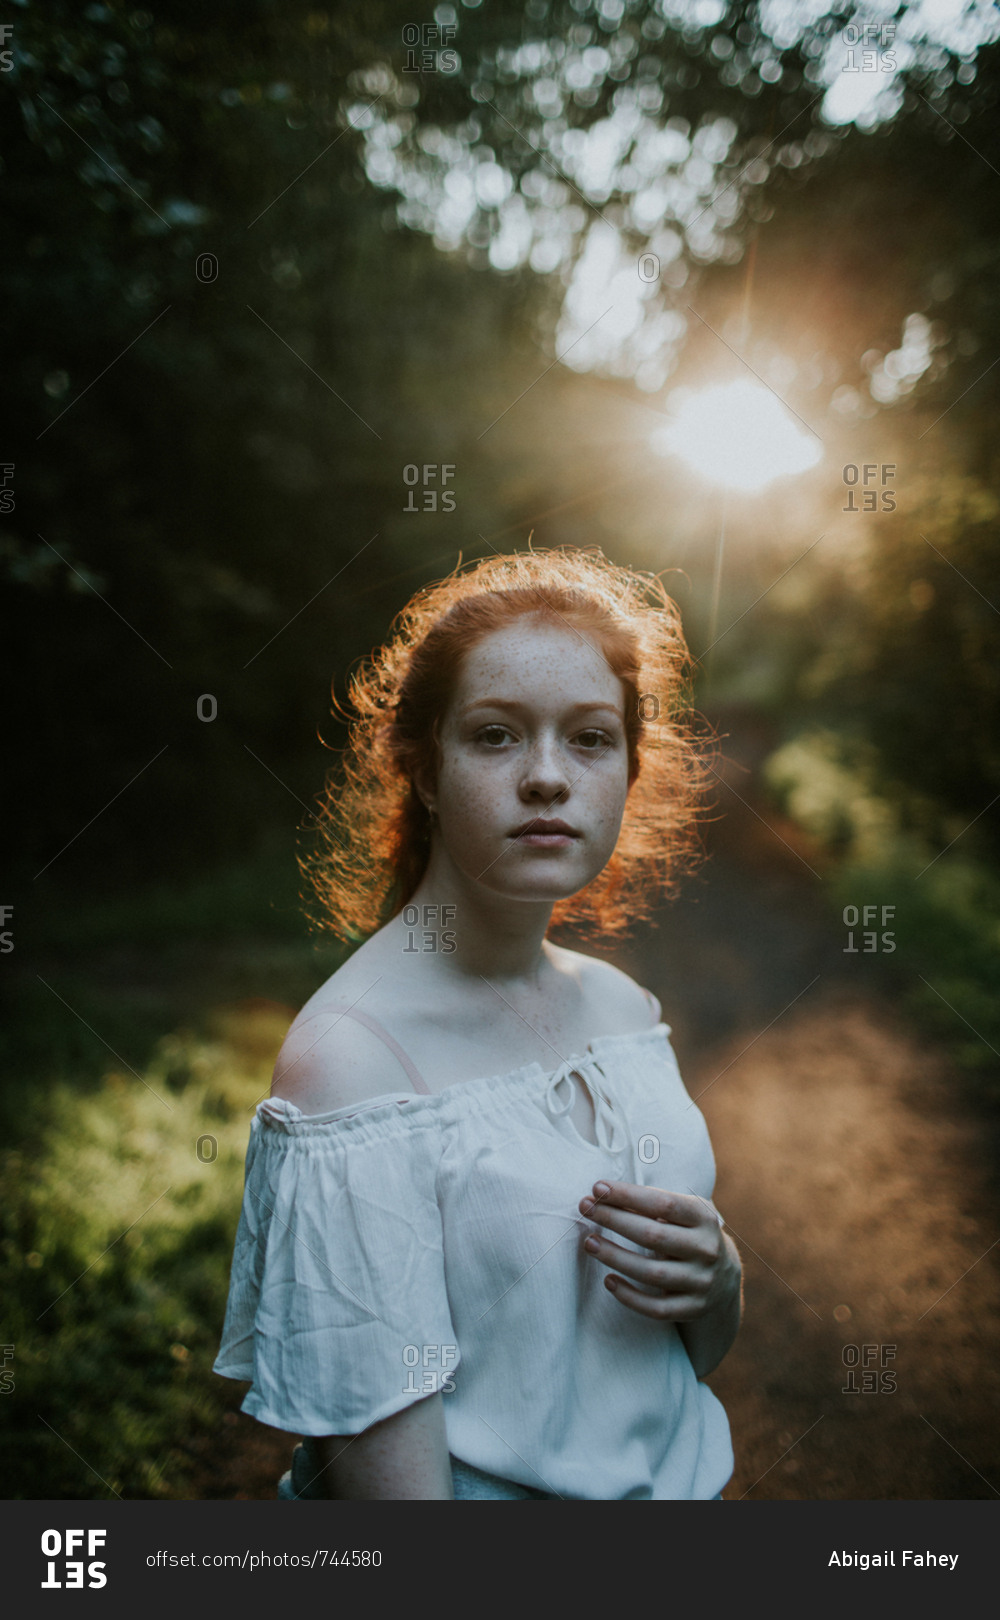 Portrait of a ginger girl wearing off-shoulder blouse at sunset